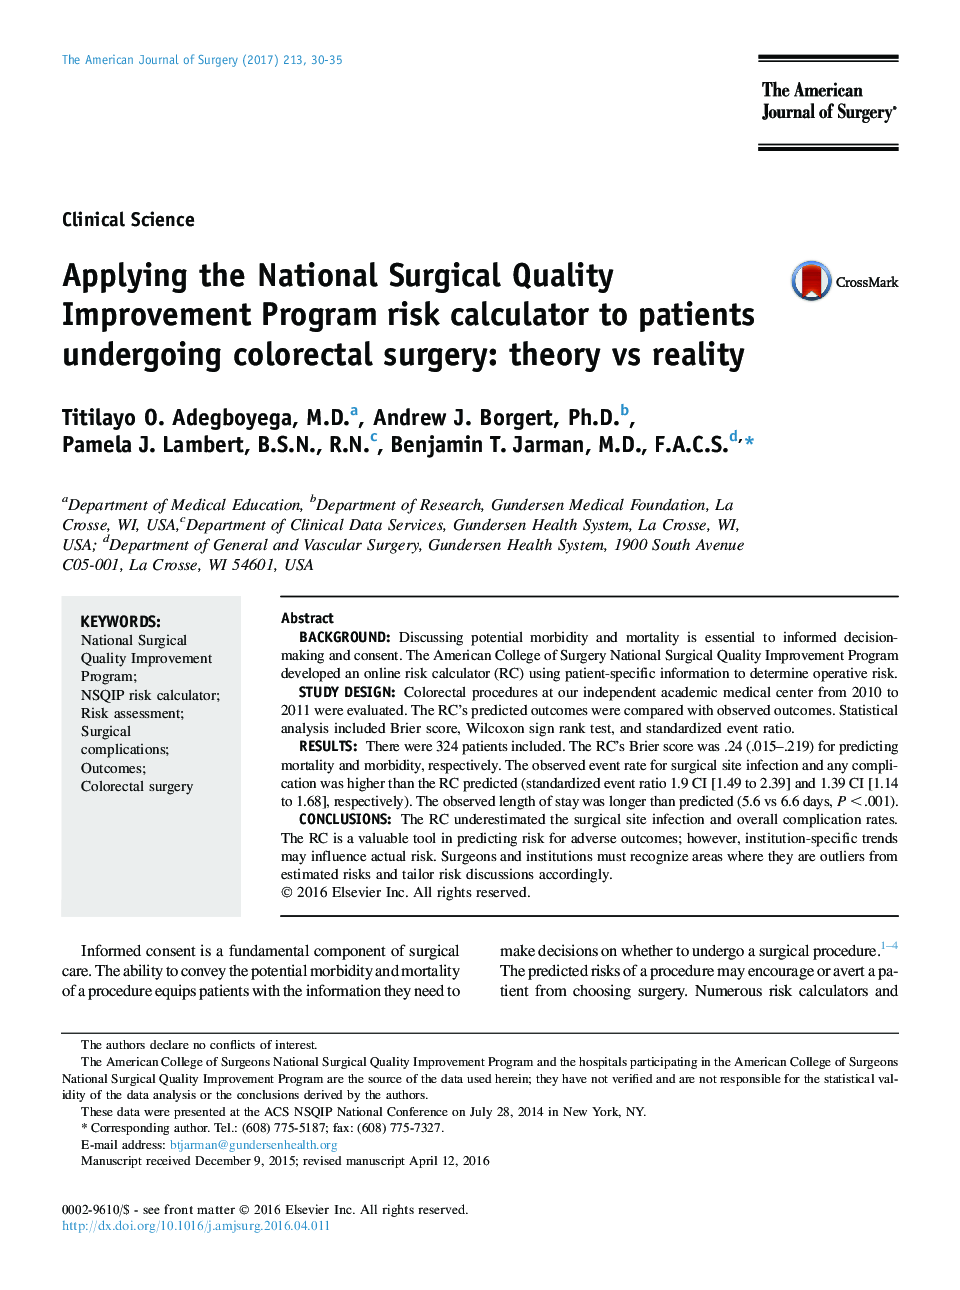 علوم بالینی با استفاده از برنامه ریسک برنامه بهبود کیفیت جراحی در بیماران تحت جراحی کولورکتال: تئوری و واقعیت 